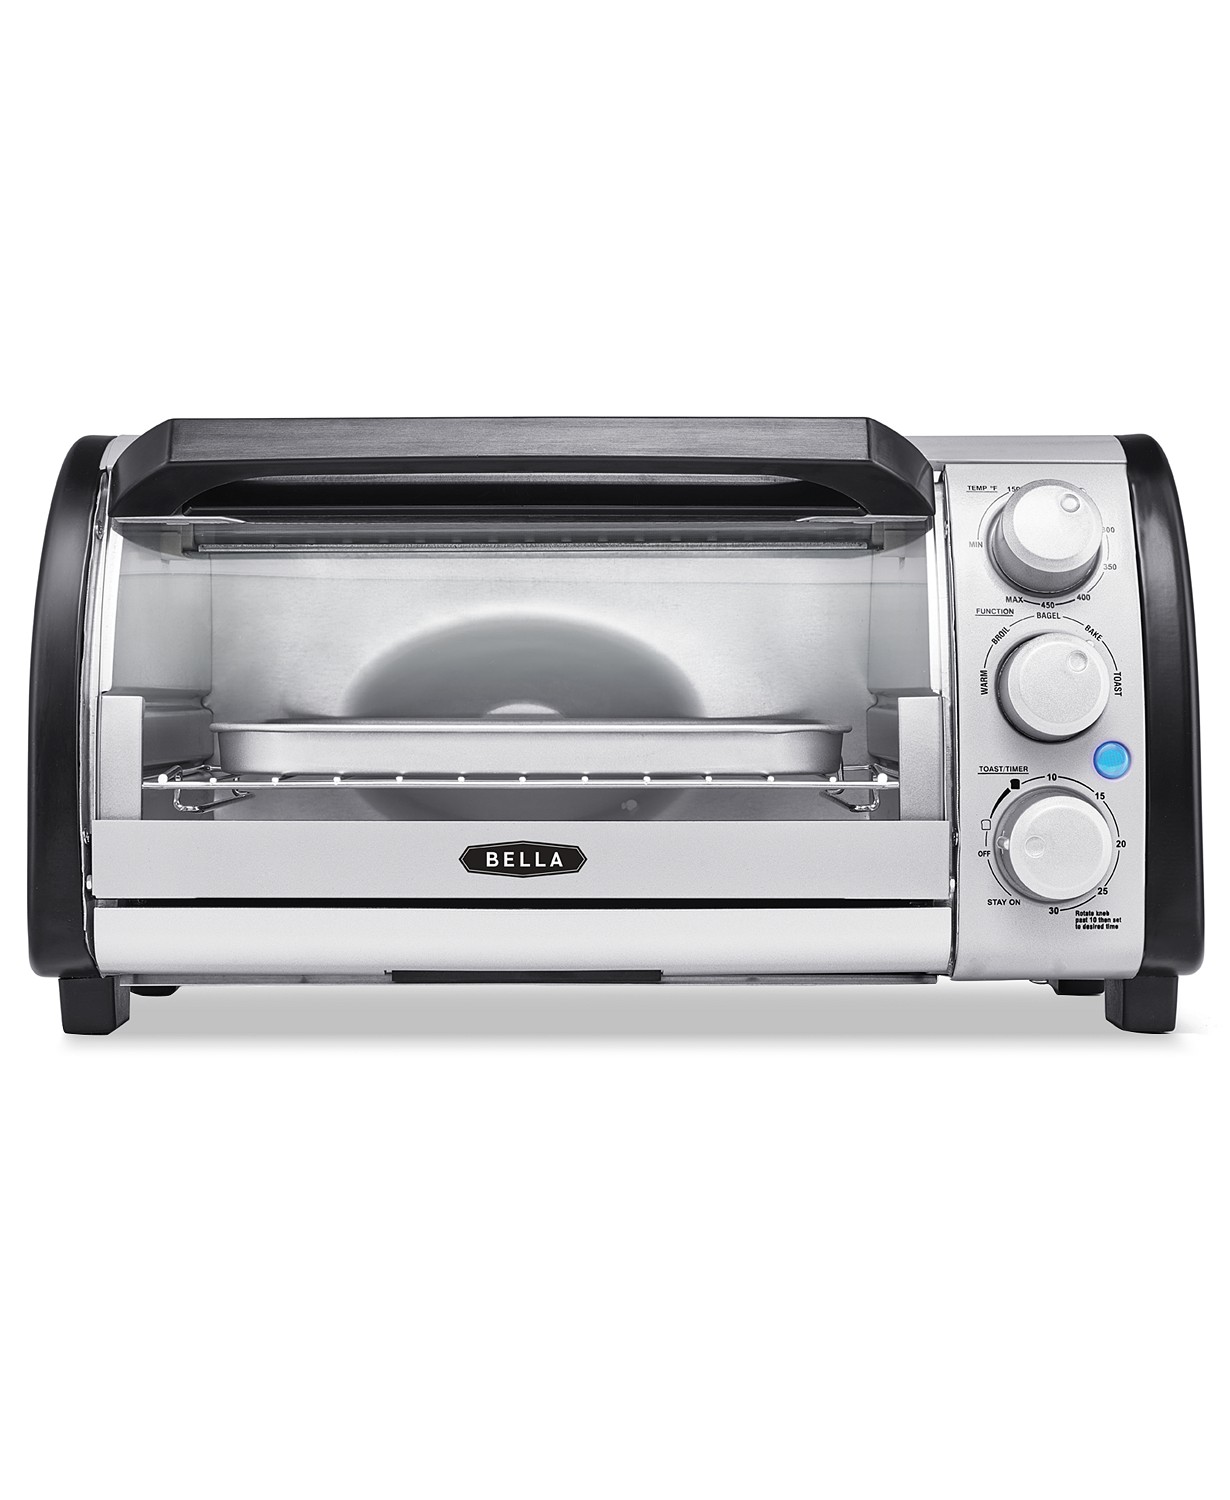 bella-4-slice-toaster-oven-in-black-silver-for-8-99-after-rebate